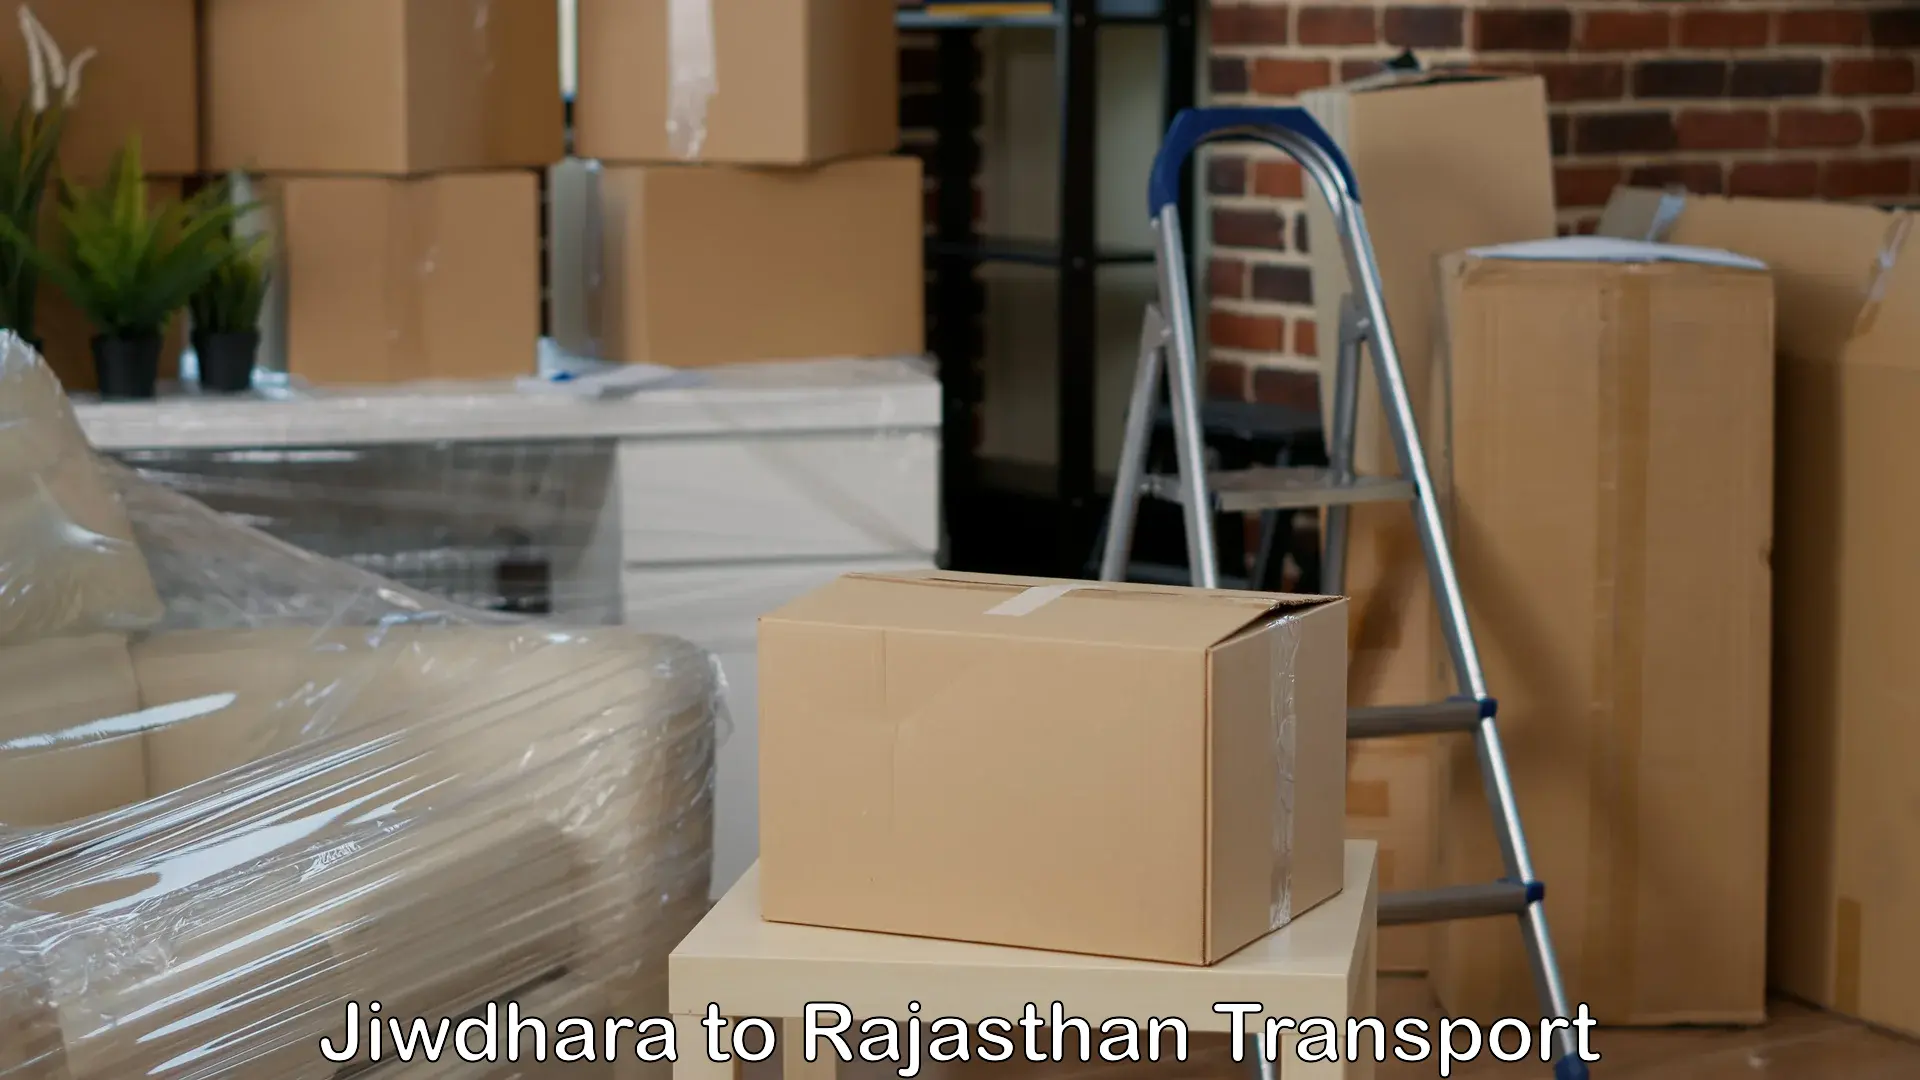 Nationwide transport services Jiwdhara to Rajasthan